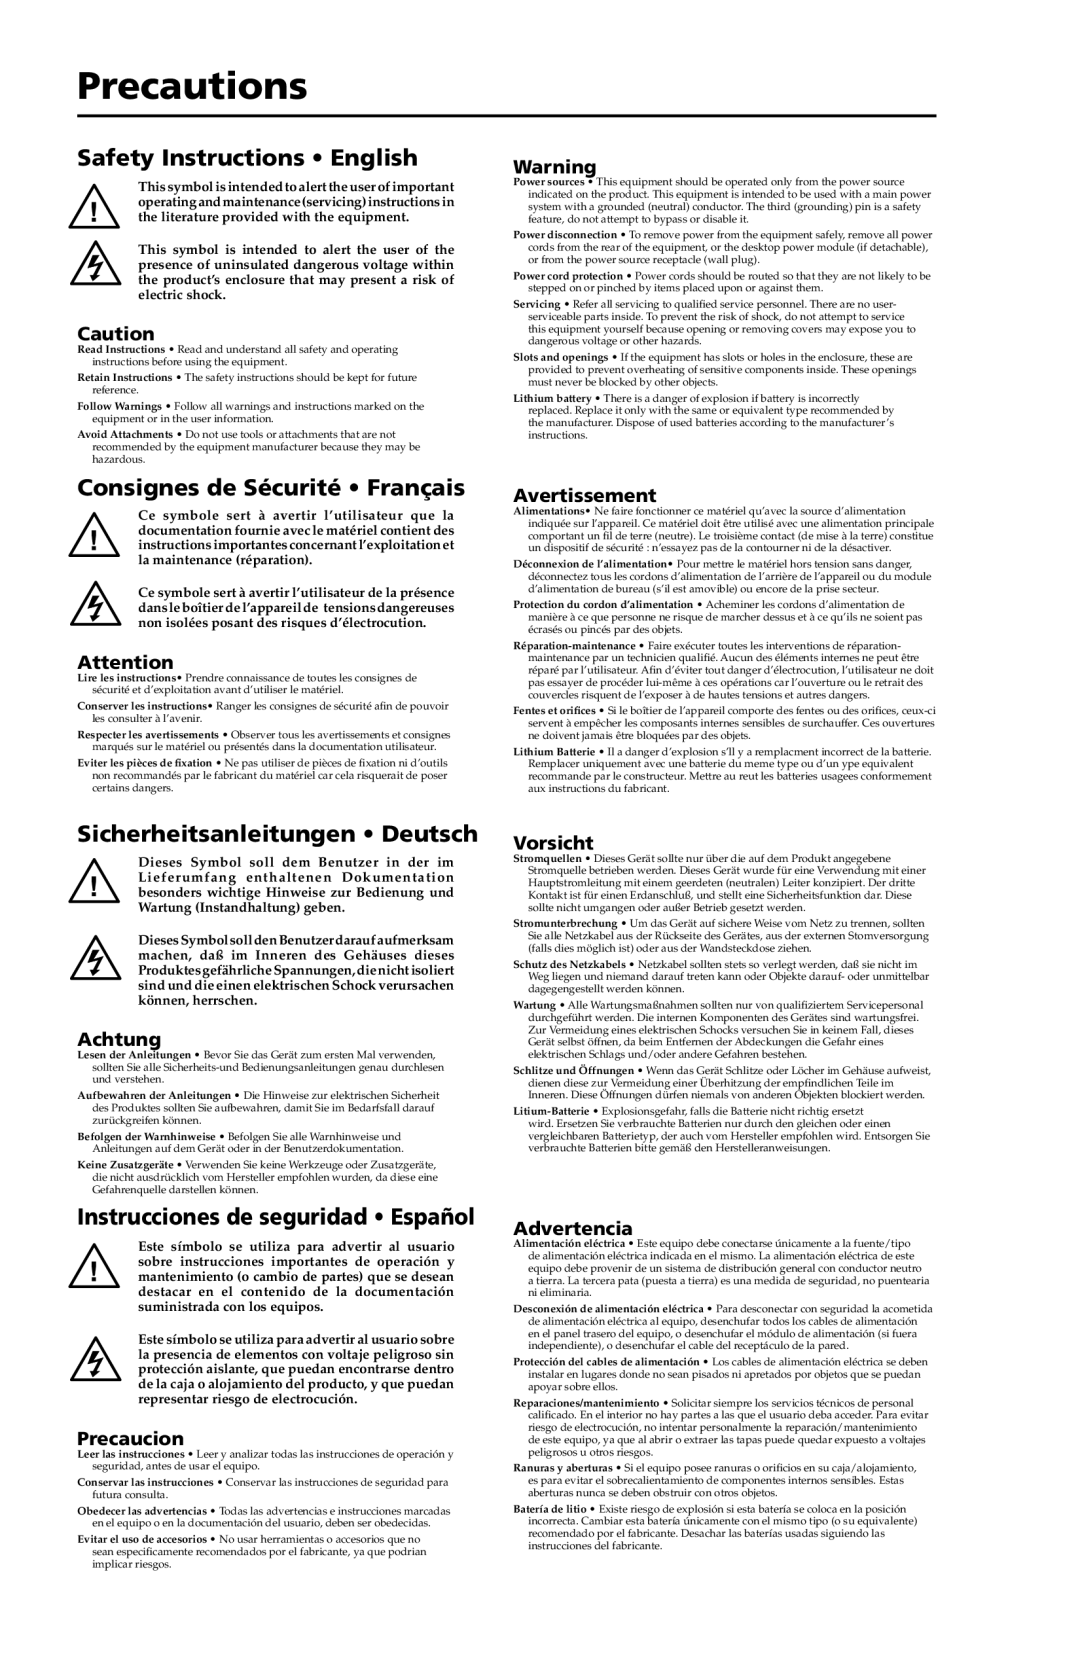 Extron electronic DVI 104 Tx/Rx Precautions, Safety Instructions English, Consignes de Sécurité Français, Avertissement 